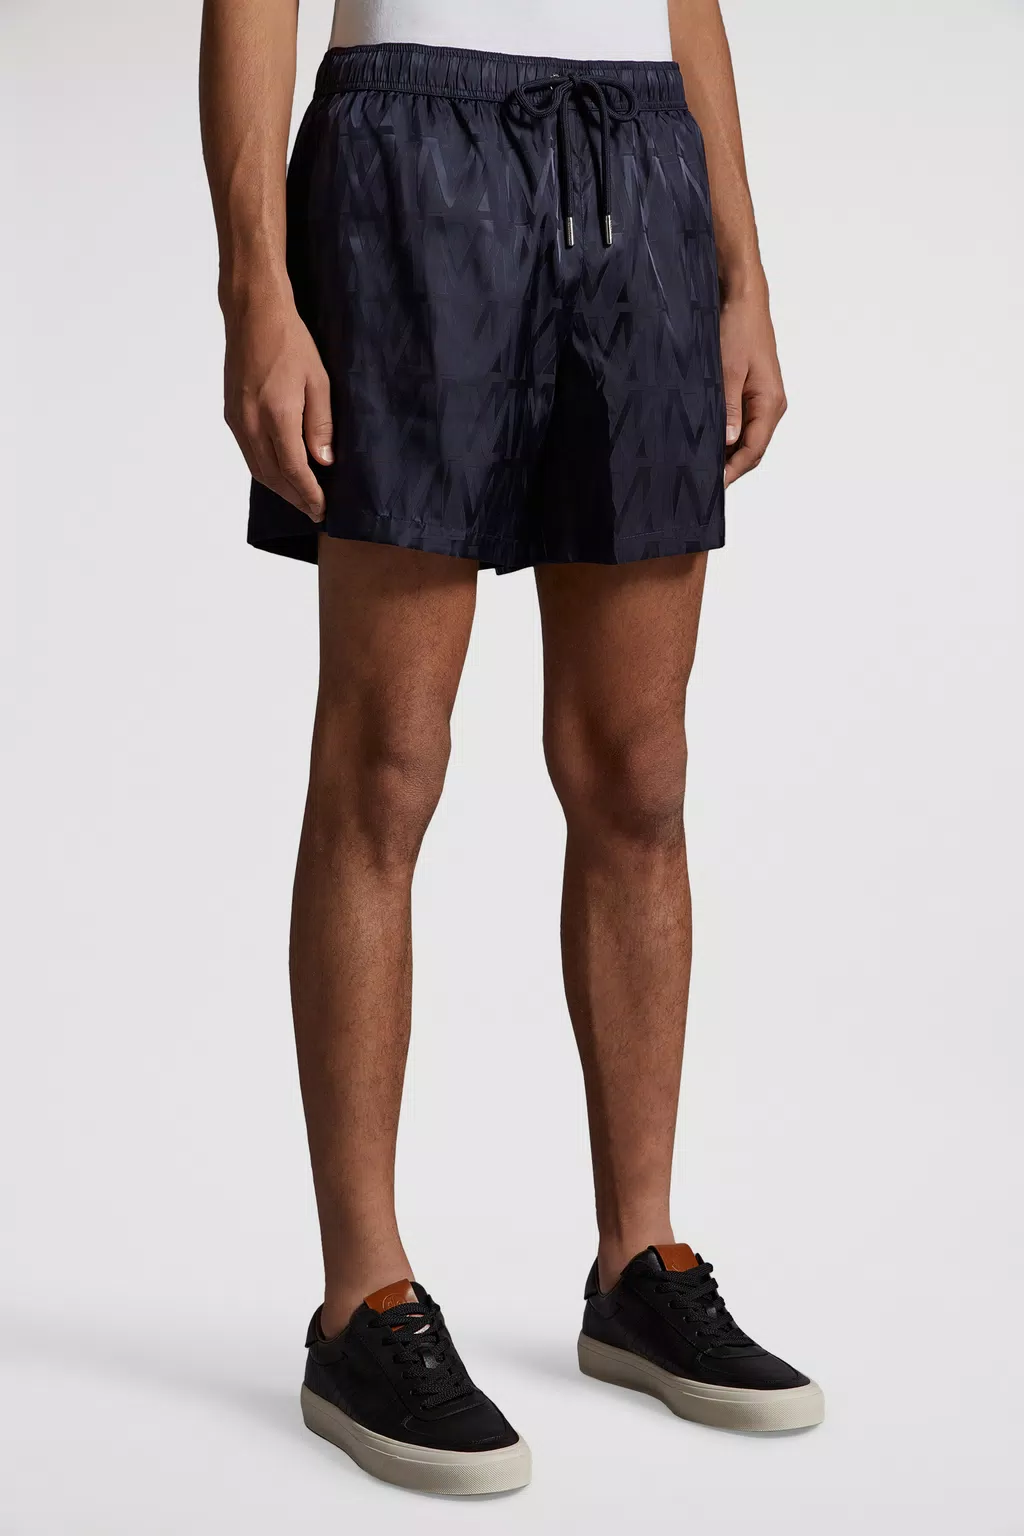 Swimwear for Men: Swim Shorts & Trunks | Moncler UK